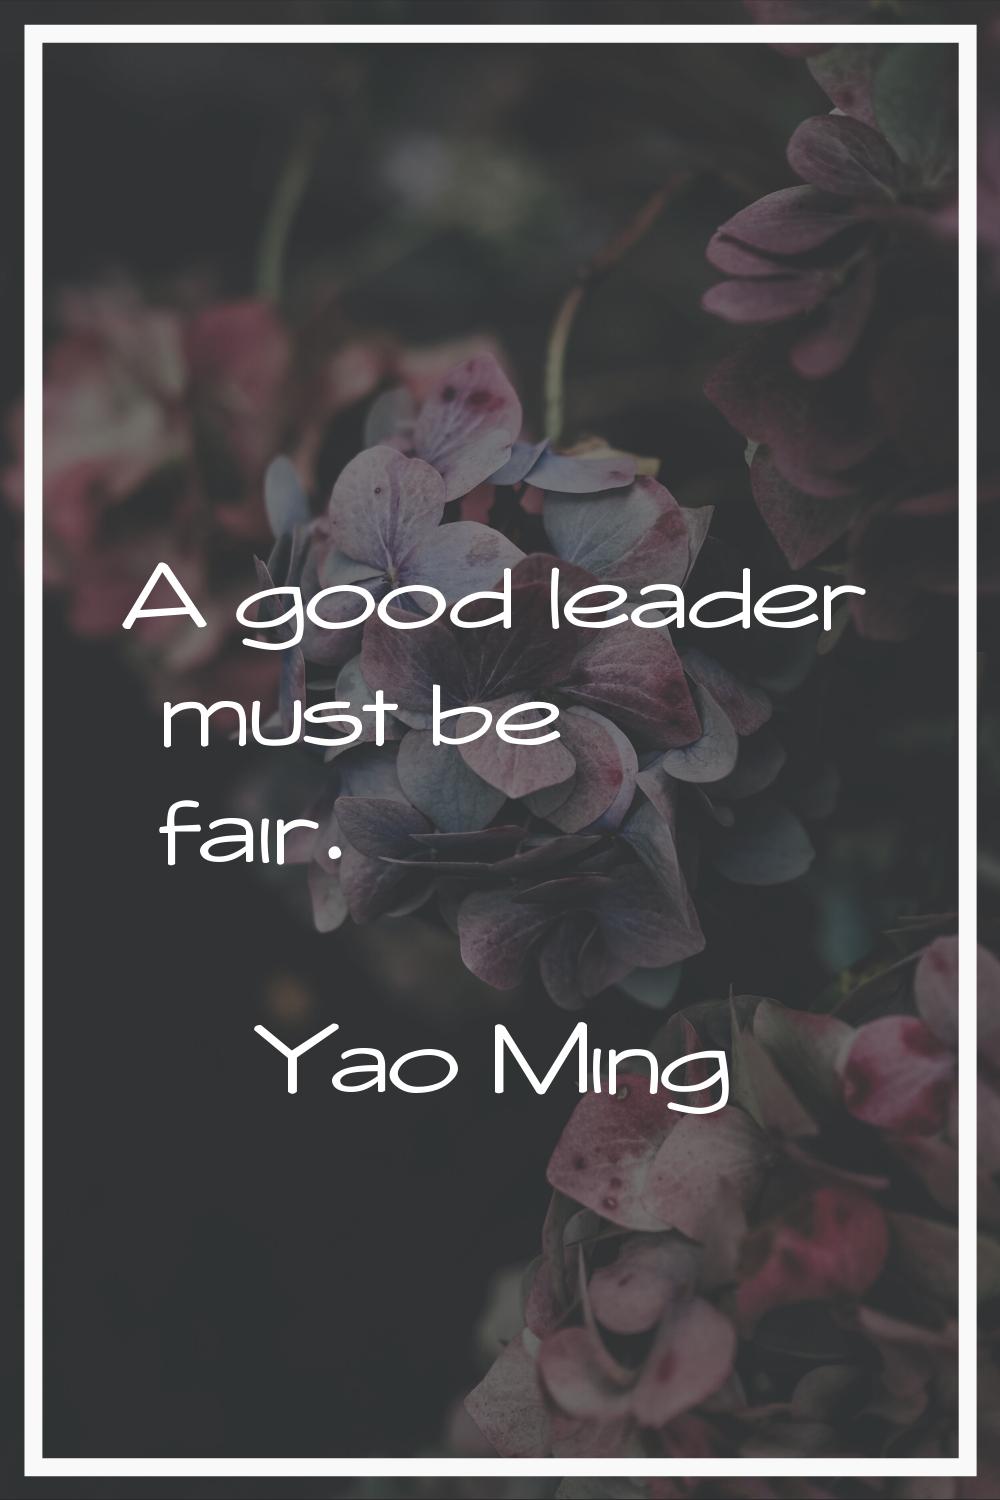 A good leader must be fair.